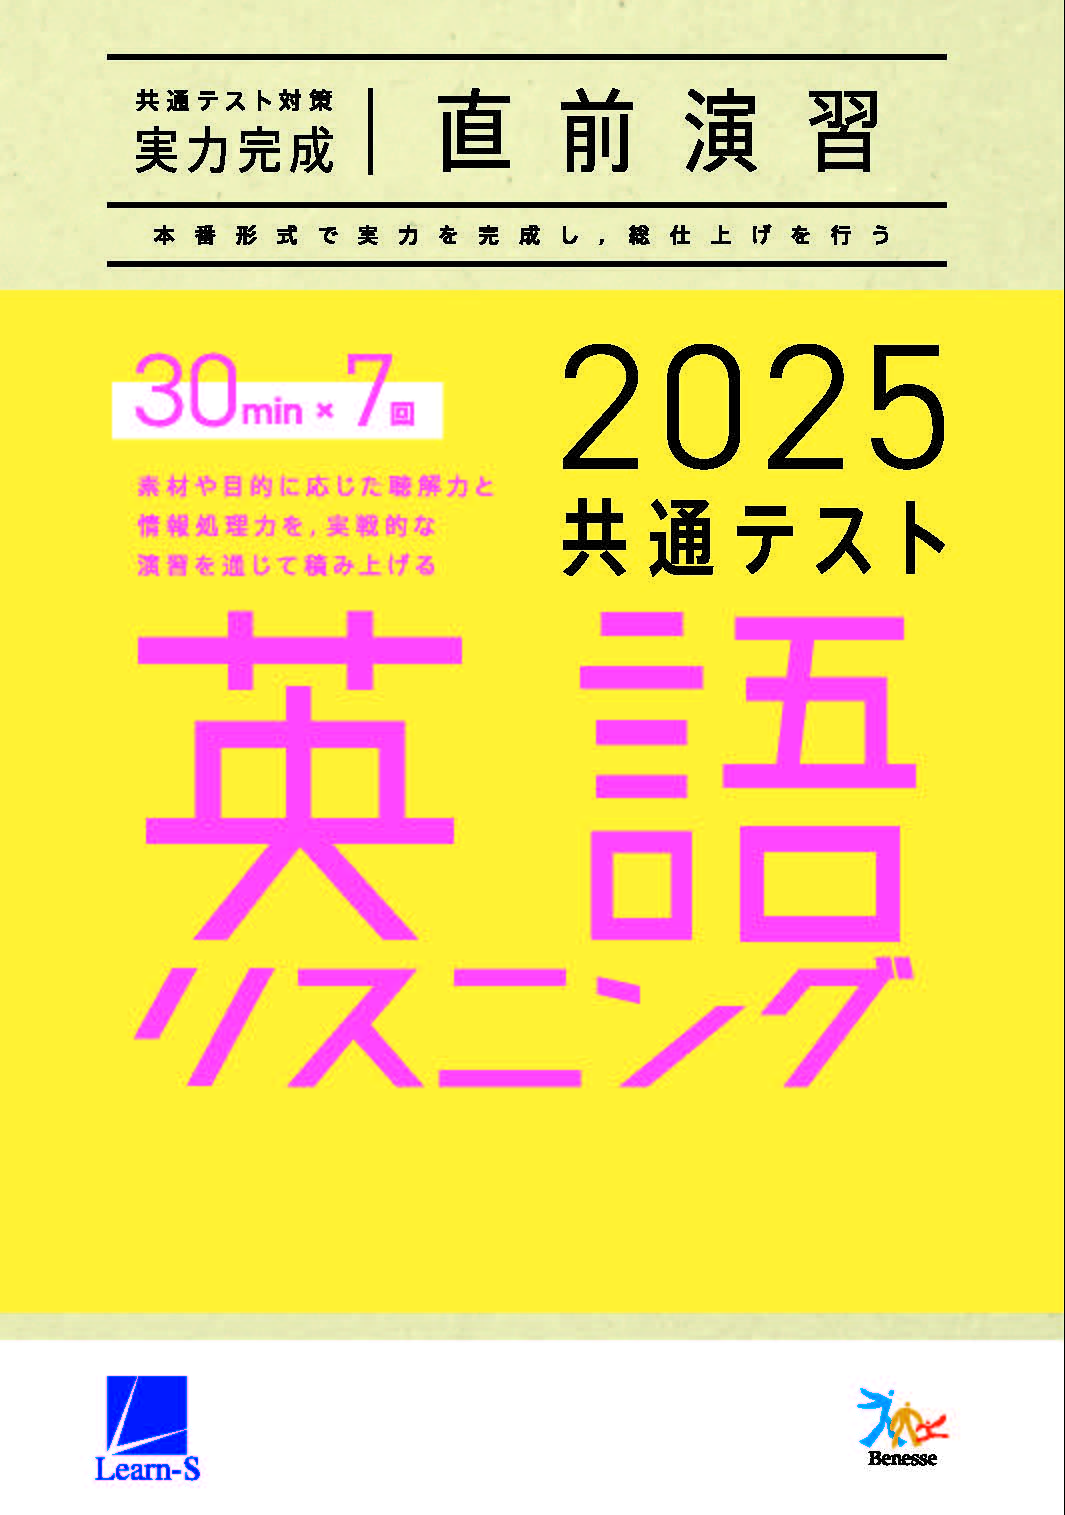 2025共通テスト対策【実力完成】直前演習　英語(リスニング)30minutes×7　ダウンロードコンテンツ